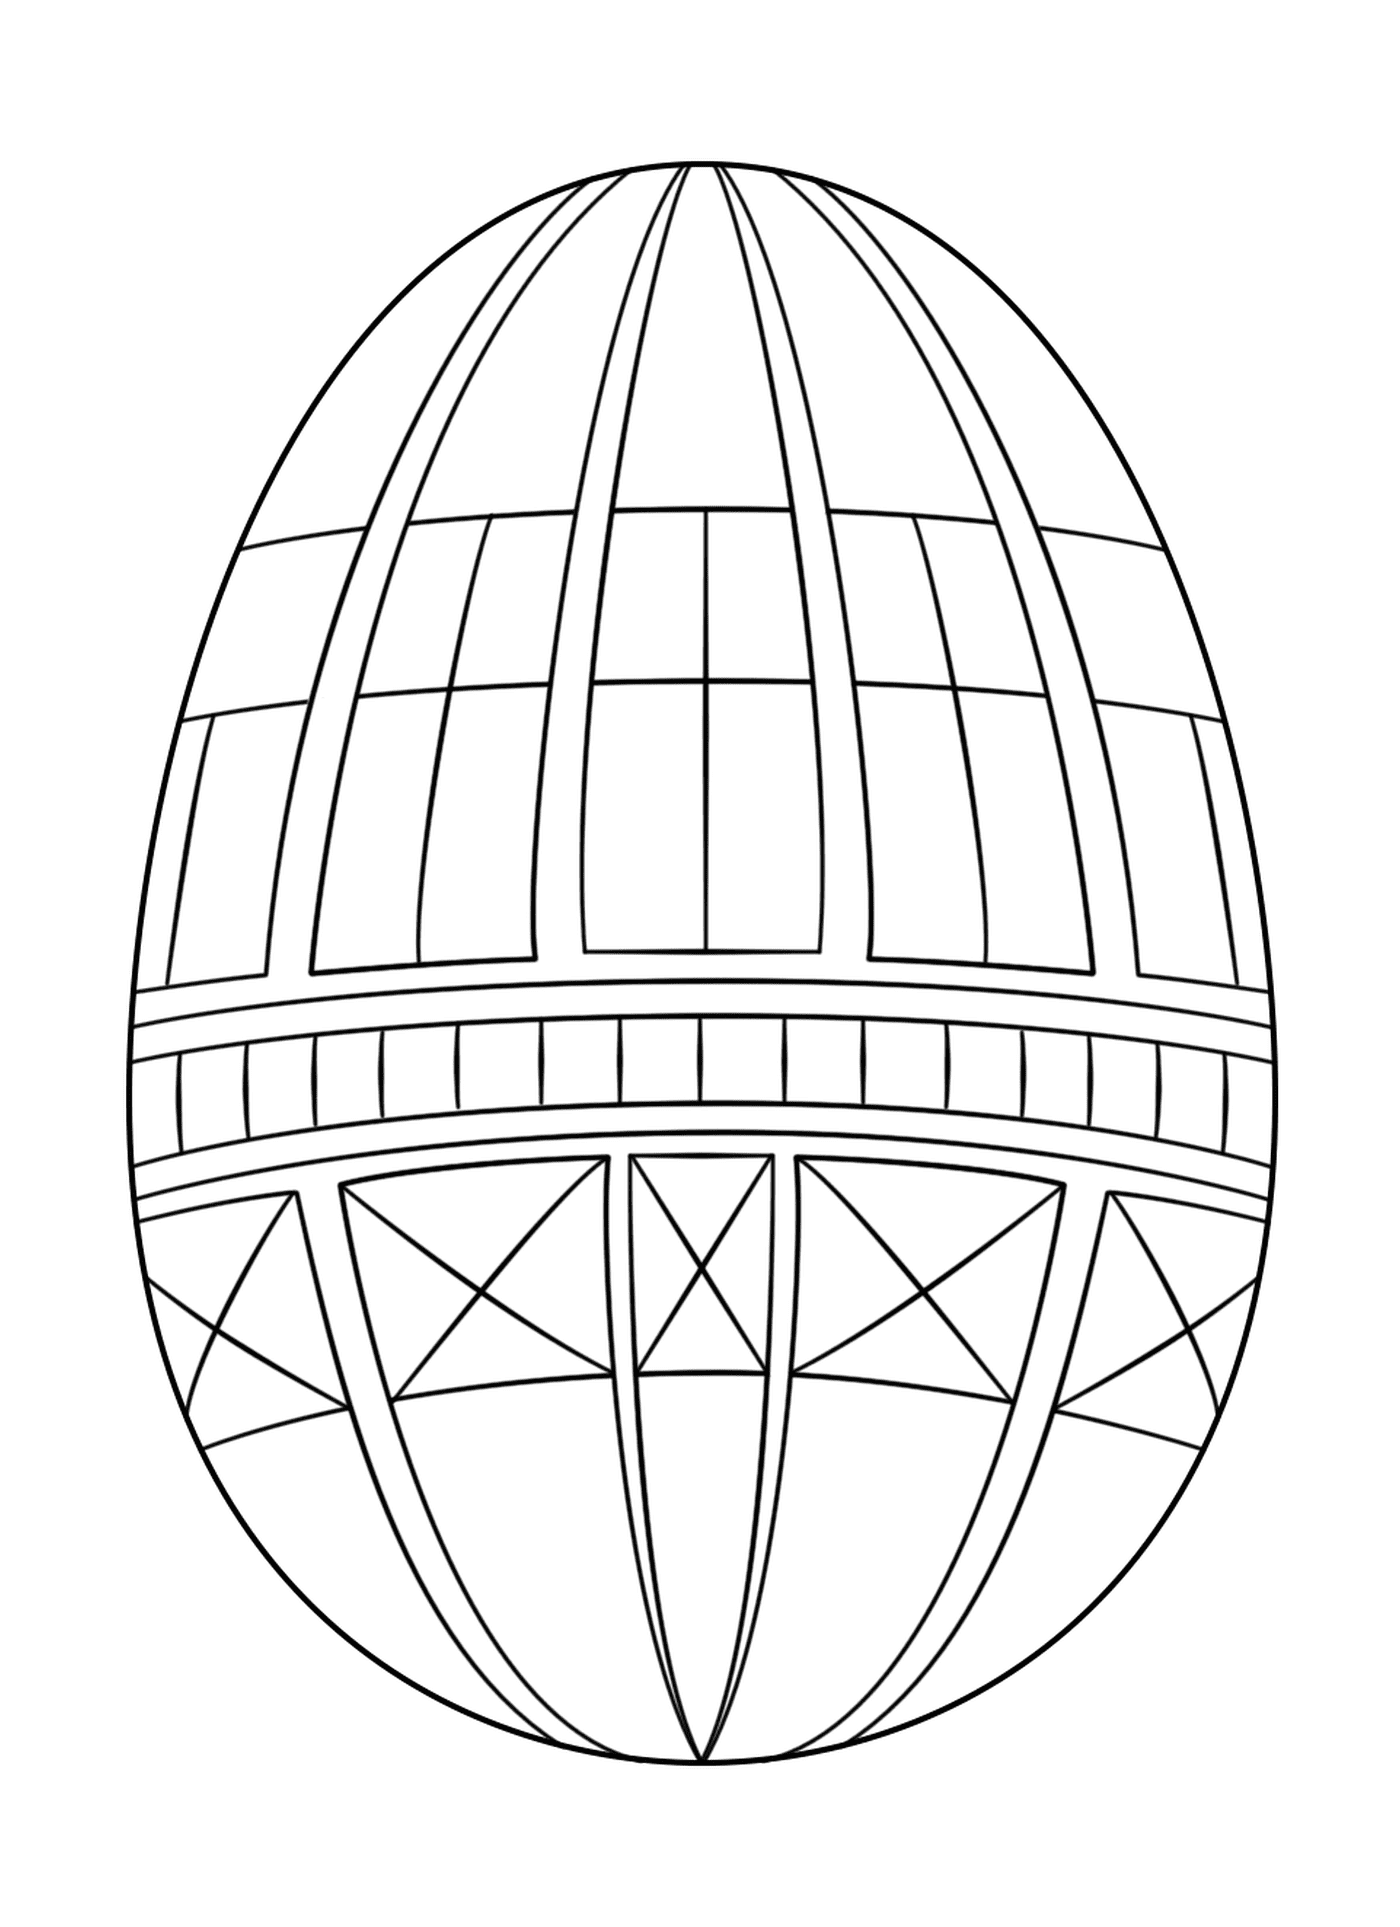  Ovo de Páscoa geométrico, um ovo colorido 